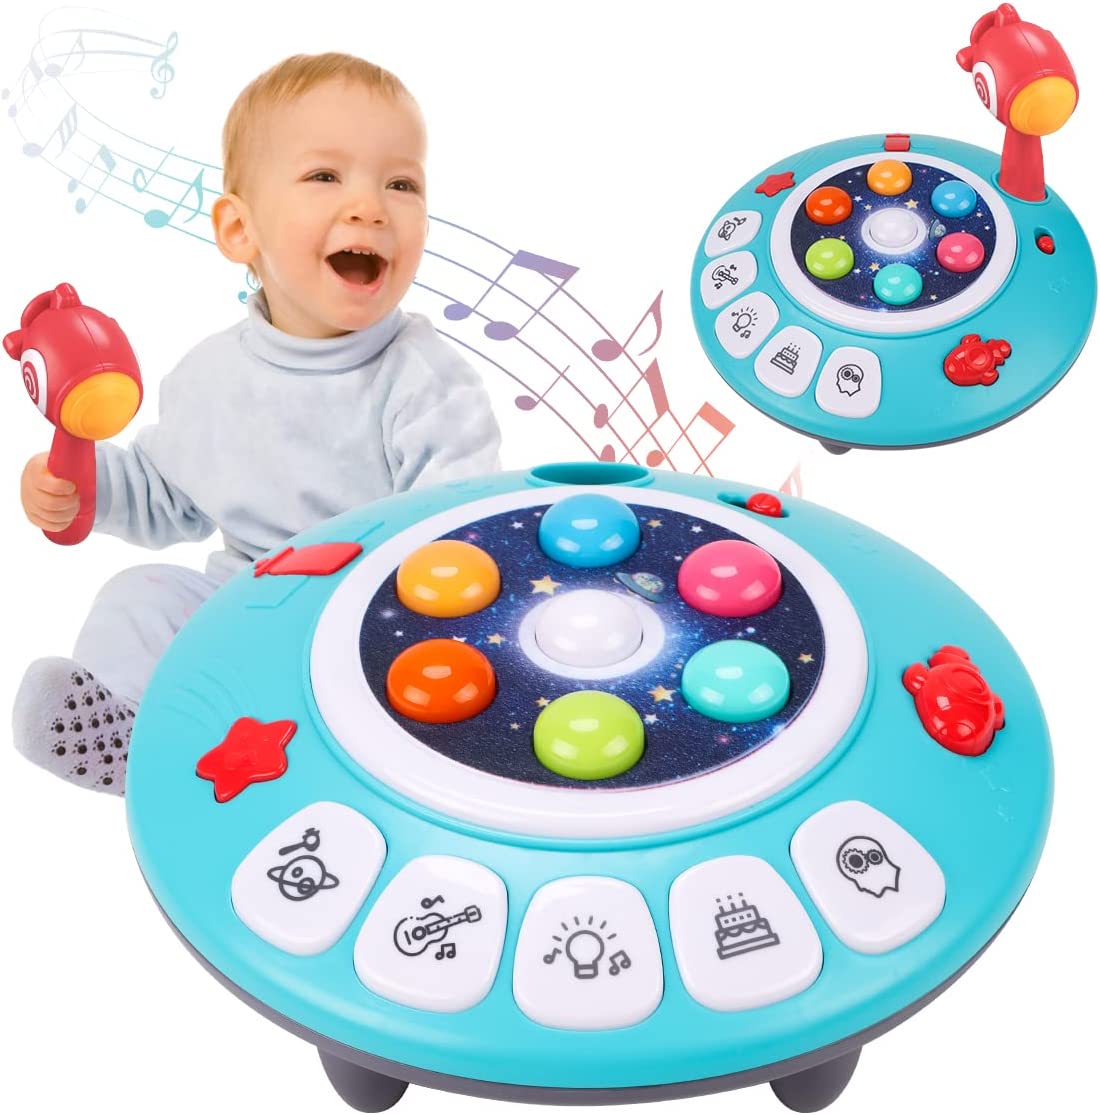 商品情報 【教育学ぶ玩具】 多機能のモグラたたきゲーム機は、従来のモグラたたき玩具を覆し、新しい玩具体験を提供し、子どもたちの早期の総合的な発達を促進します。 【細かい運動技能】 さまざまな遊び方、子供の手と目の協調の改善、音楽学習への子供の熱意の刺激、子供の記憶の行使、子供のコミュニケーション能力の促進、友達作りなど、さまざまな方法があります。子供の成長に伴う教師。 【クリエイティブゲームプレイ】 子守唄、モグラたたき、ピアノモード、リズムマスター、ライトショー、プログラムモード、思考記憶、英語の歌など、さまざまな革新的な機能を使って子供向けのゲームパークを構築しています。遊んでいる間、探検して学びましょう。 【環境にやさしい素材と赤ちゃんのための磨き上げられた滑らかなエッジ】 幼児用おもちゃは、BPAを含まず、毒性のない高品質のABSでできており、赤ちゃんにとって100％安全です。バリのない磨き上げられた滑らかなエッジは、赤ちゃんの柔らかい肌を傷つけません。その大きさは、赤ちゃんの小さな手が握る能力を訓練するのに最適です。柔らかな光のデザインは視覚を助け、赤ちゃんの目を傷つけません 【就学前のプレゼントに最適】 モグラたたきおもちゃのプログラムモードは、パーティーや誕生日などのパーティーで使用でき、おもちゃのライトショー、お誕生日おめでとう曲などの曲の再生、パーティー、それは子供たちへの贈り物です誕生日、クリスマス、イースター、その他のホリデーギフトに最適です。